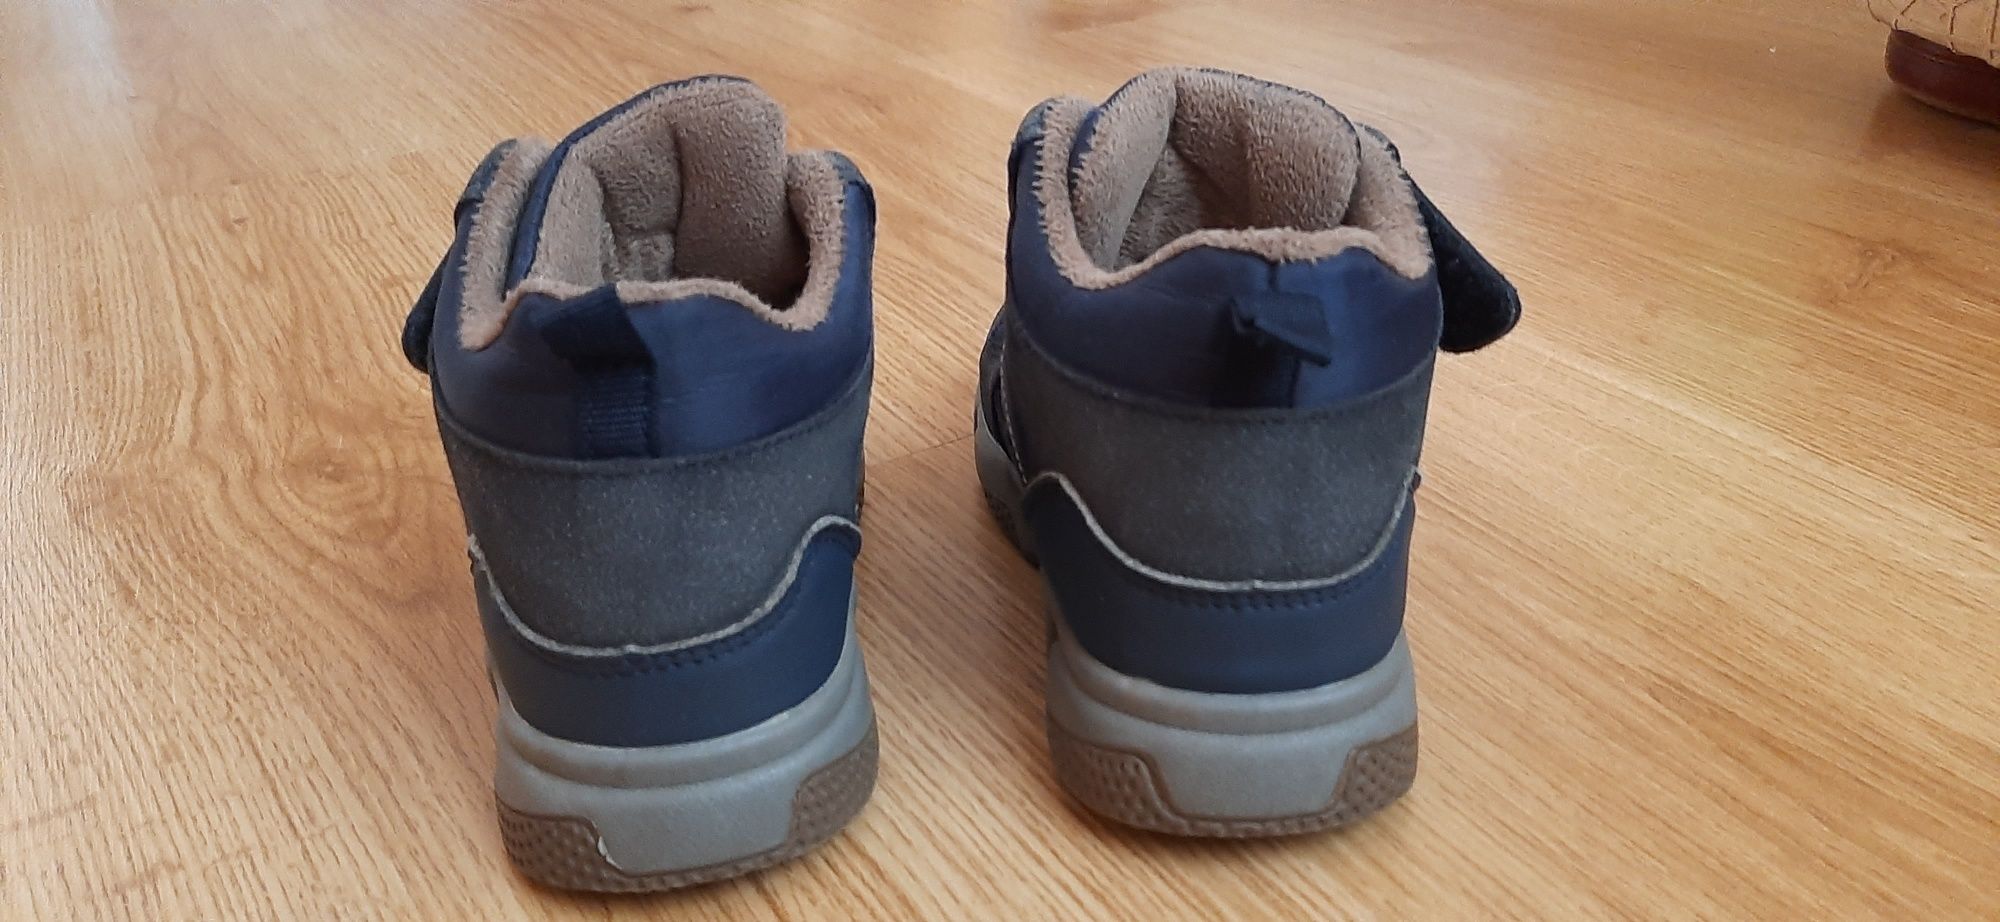 Черевики для хлопчика, осінь, 28 розмір (ботинки для мальчика)